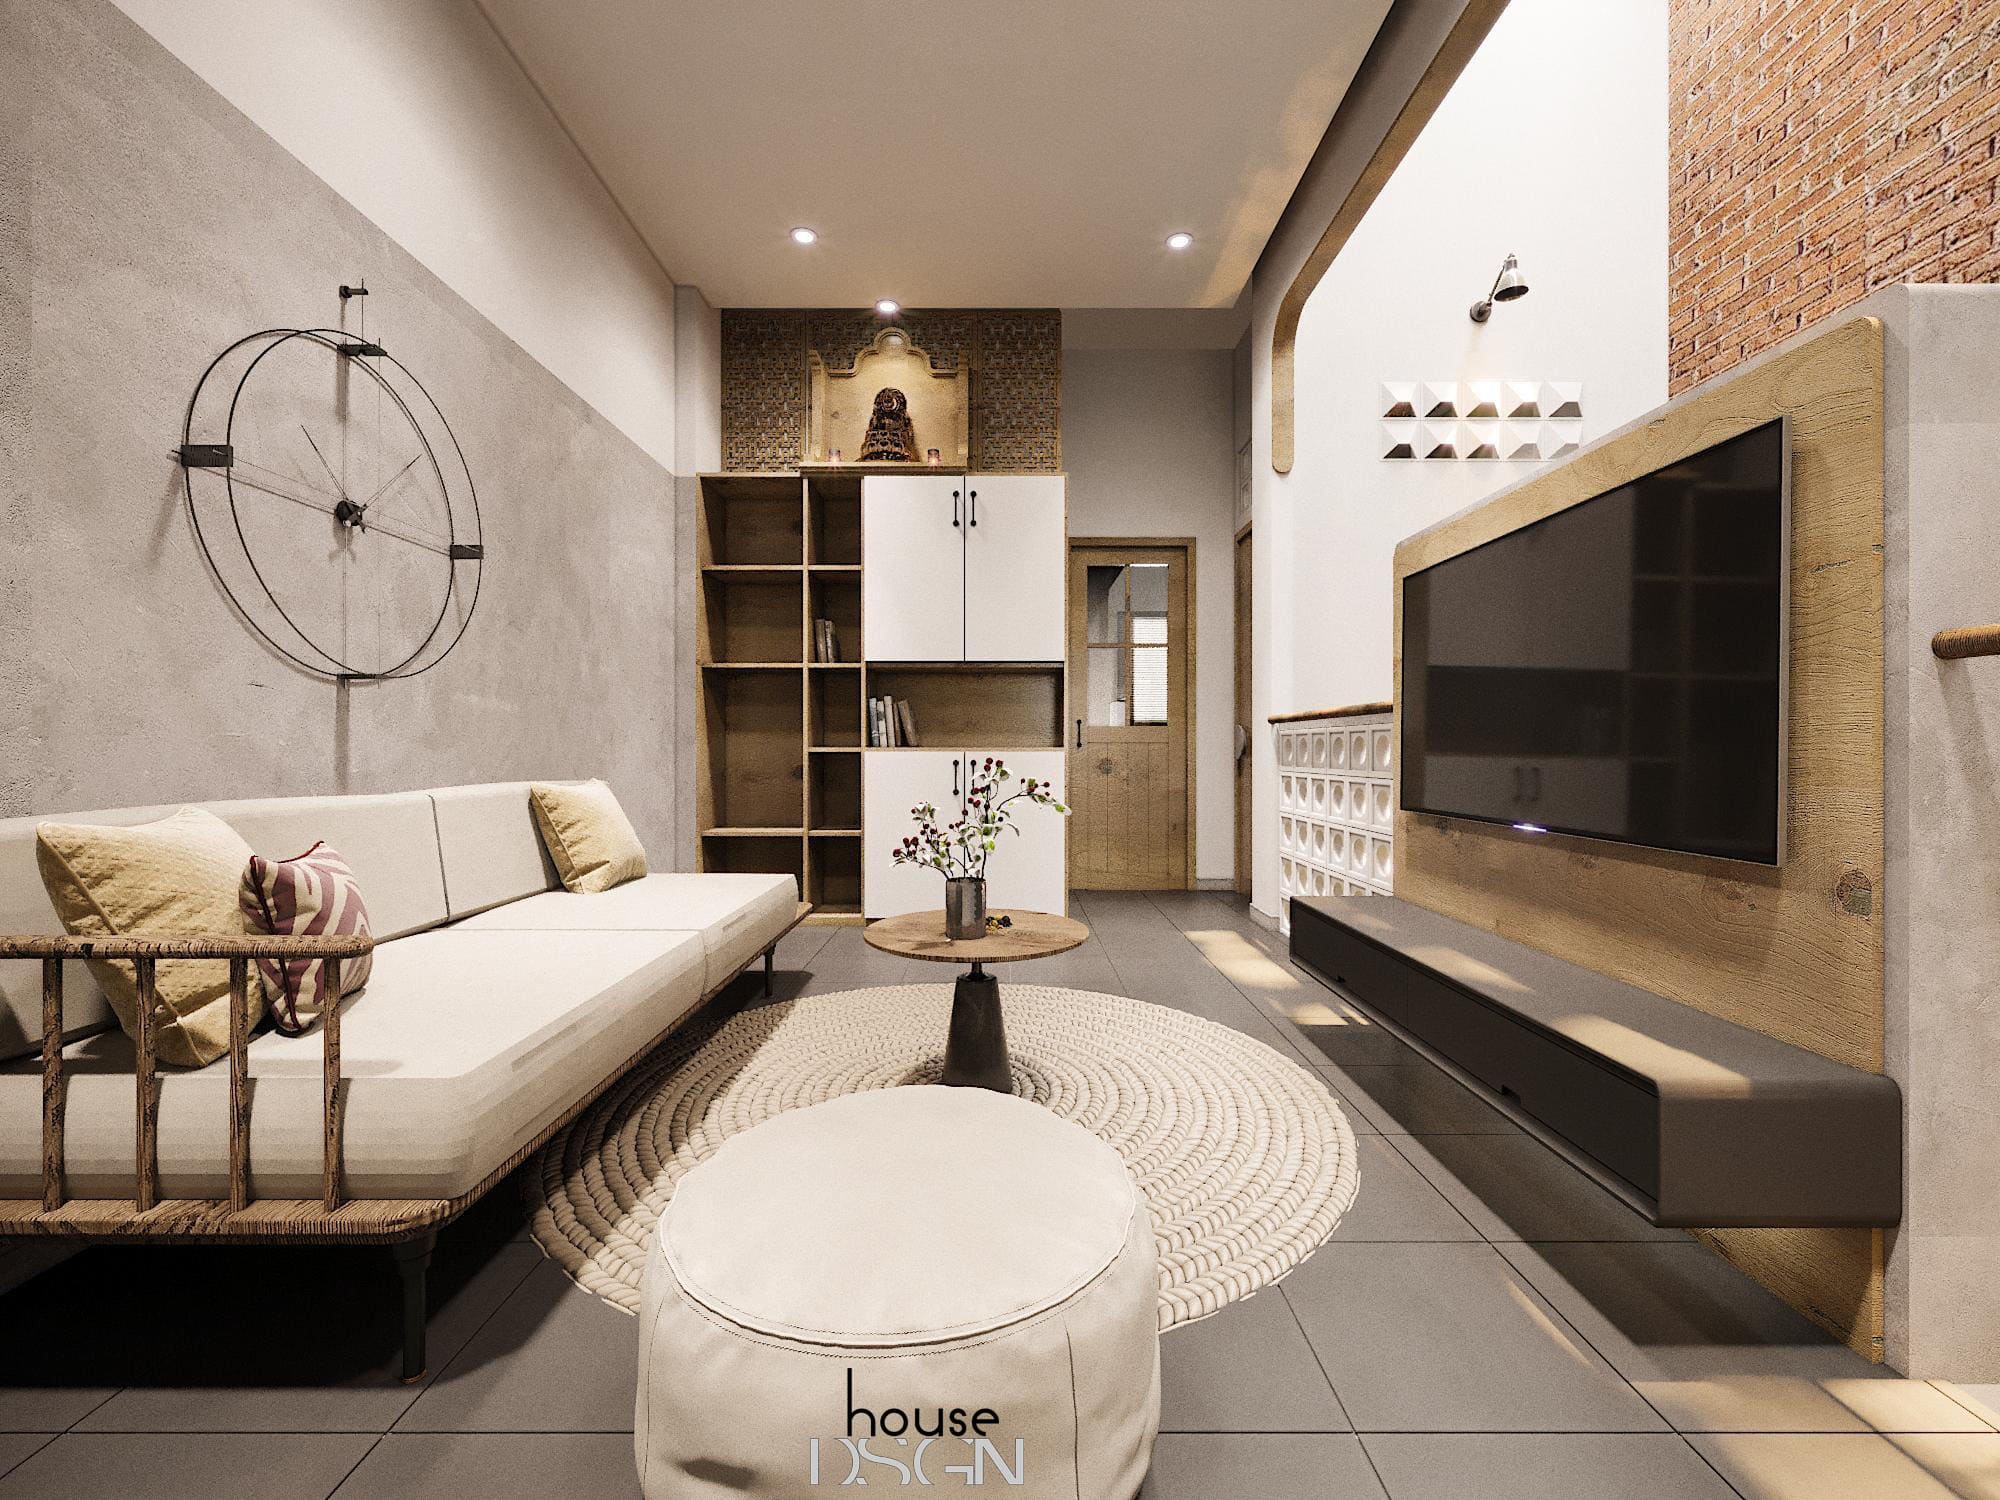 Nội thất Nhà Đẹp cung cấp sản phẩm nội thất chất lượng, đẹp mắt |  websosanh.vn